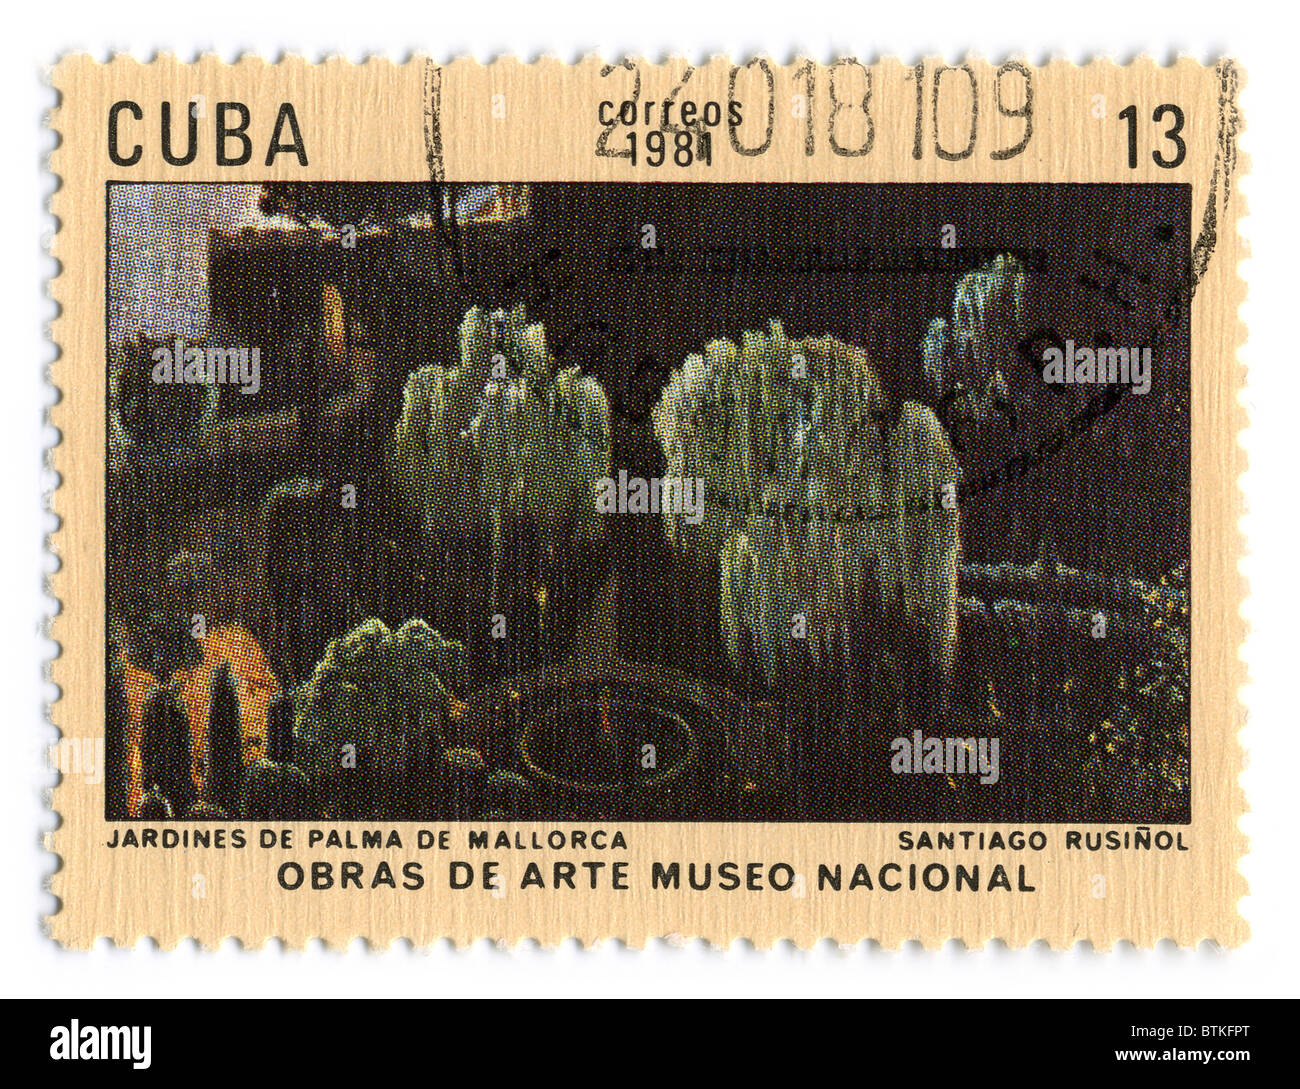 CUBA - CIRCA 1981: A stamp printed in CUBA shows paint by Santiago Rusinol 'Gardens Palma de Mallorca', circa 1981 Stock Photo